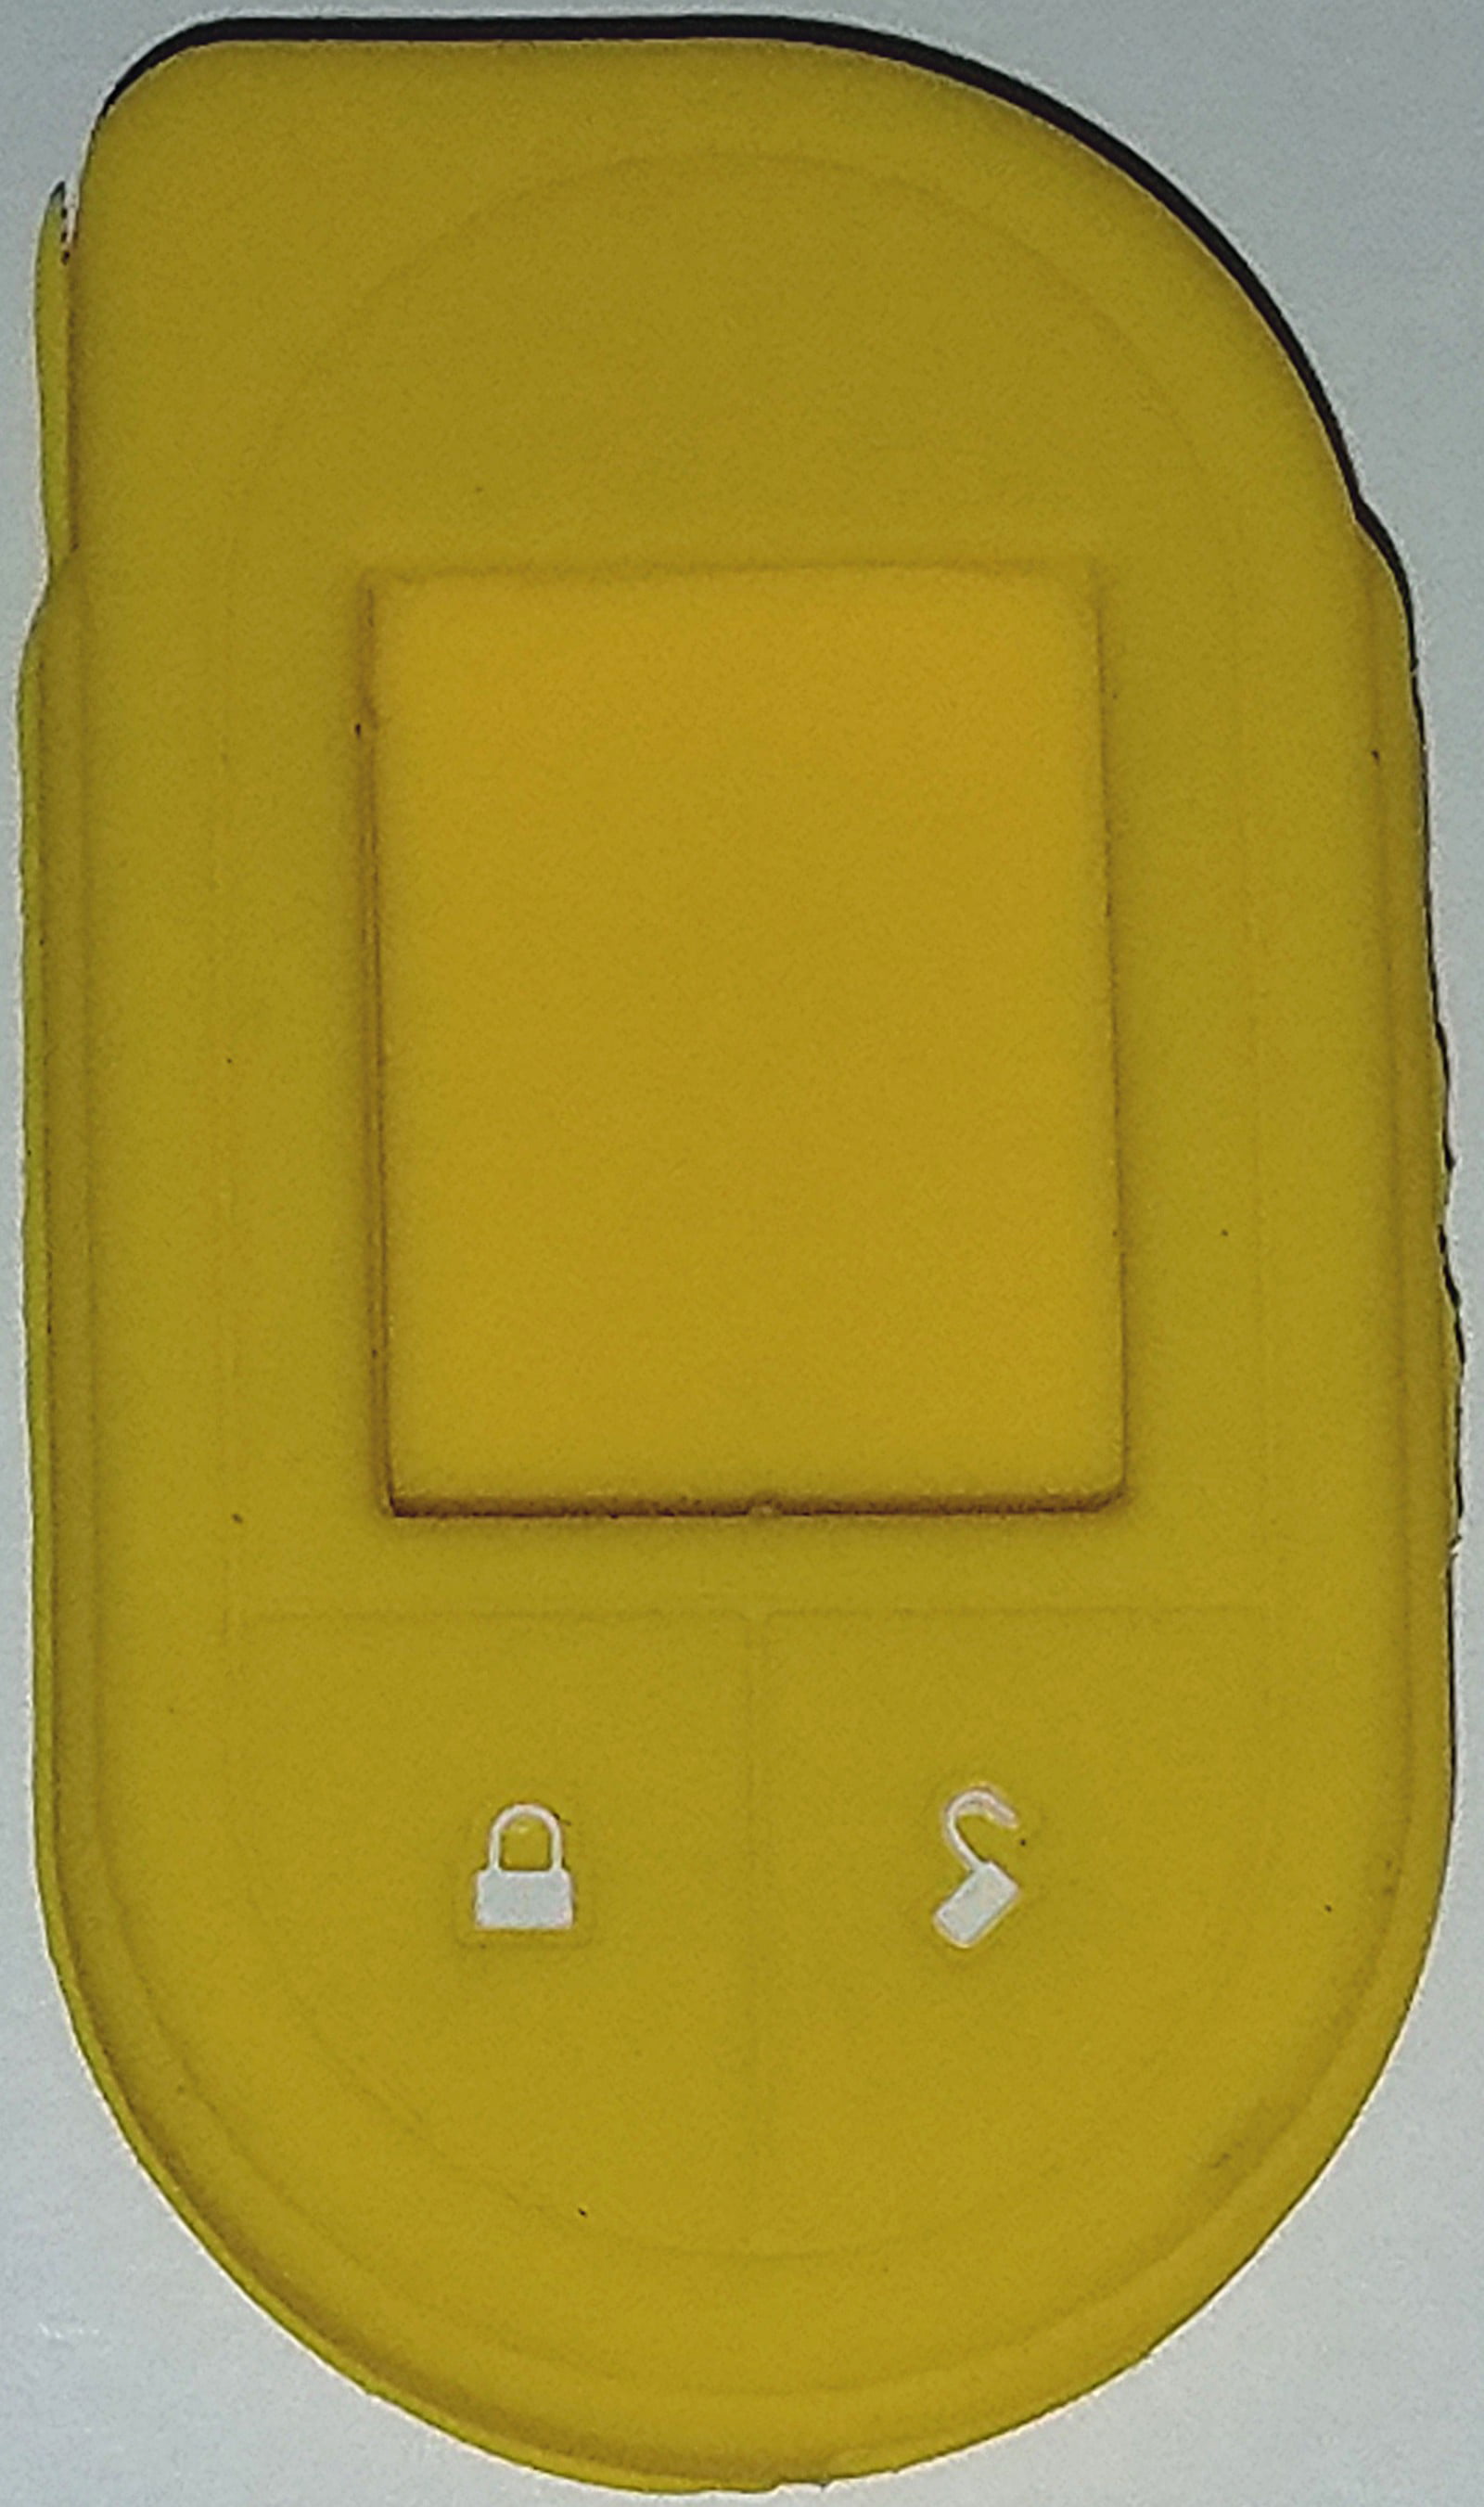 Viper 7351V Genuine Leather Remote Control Case 